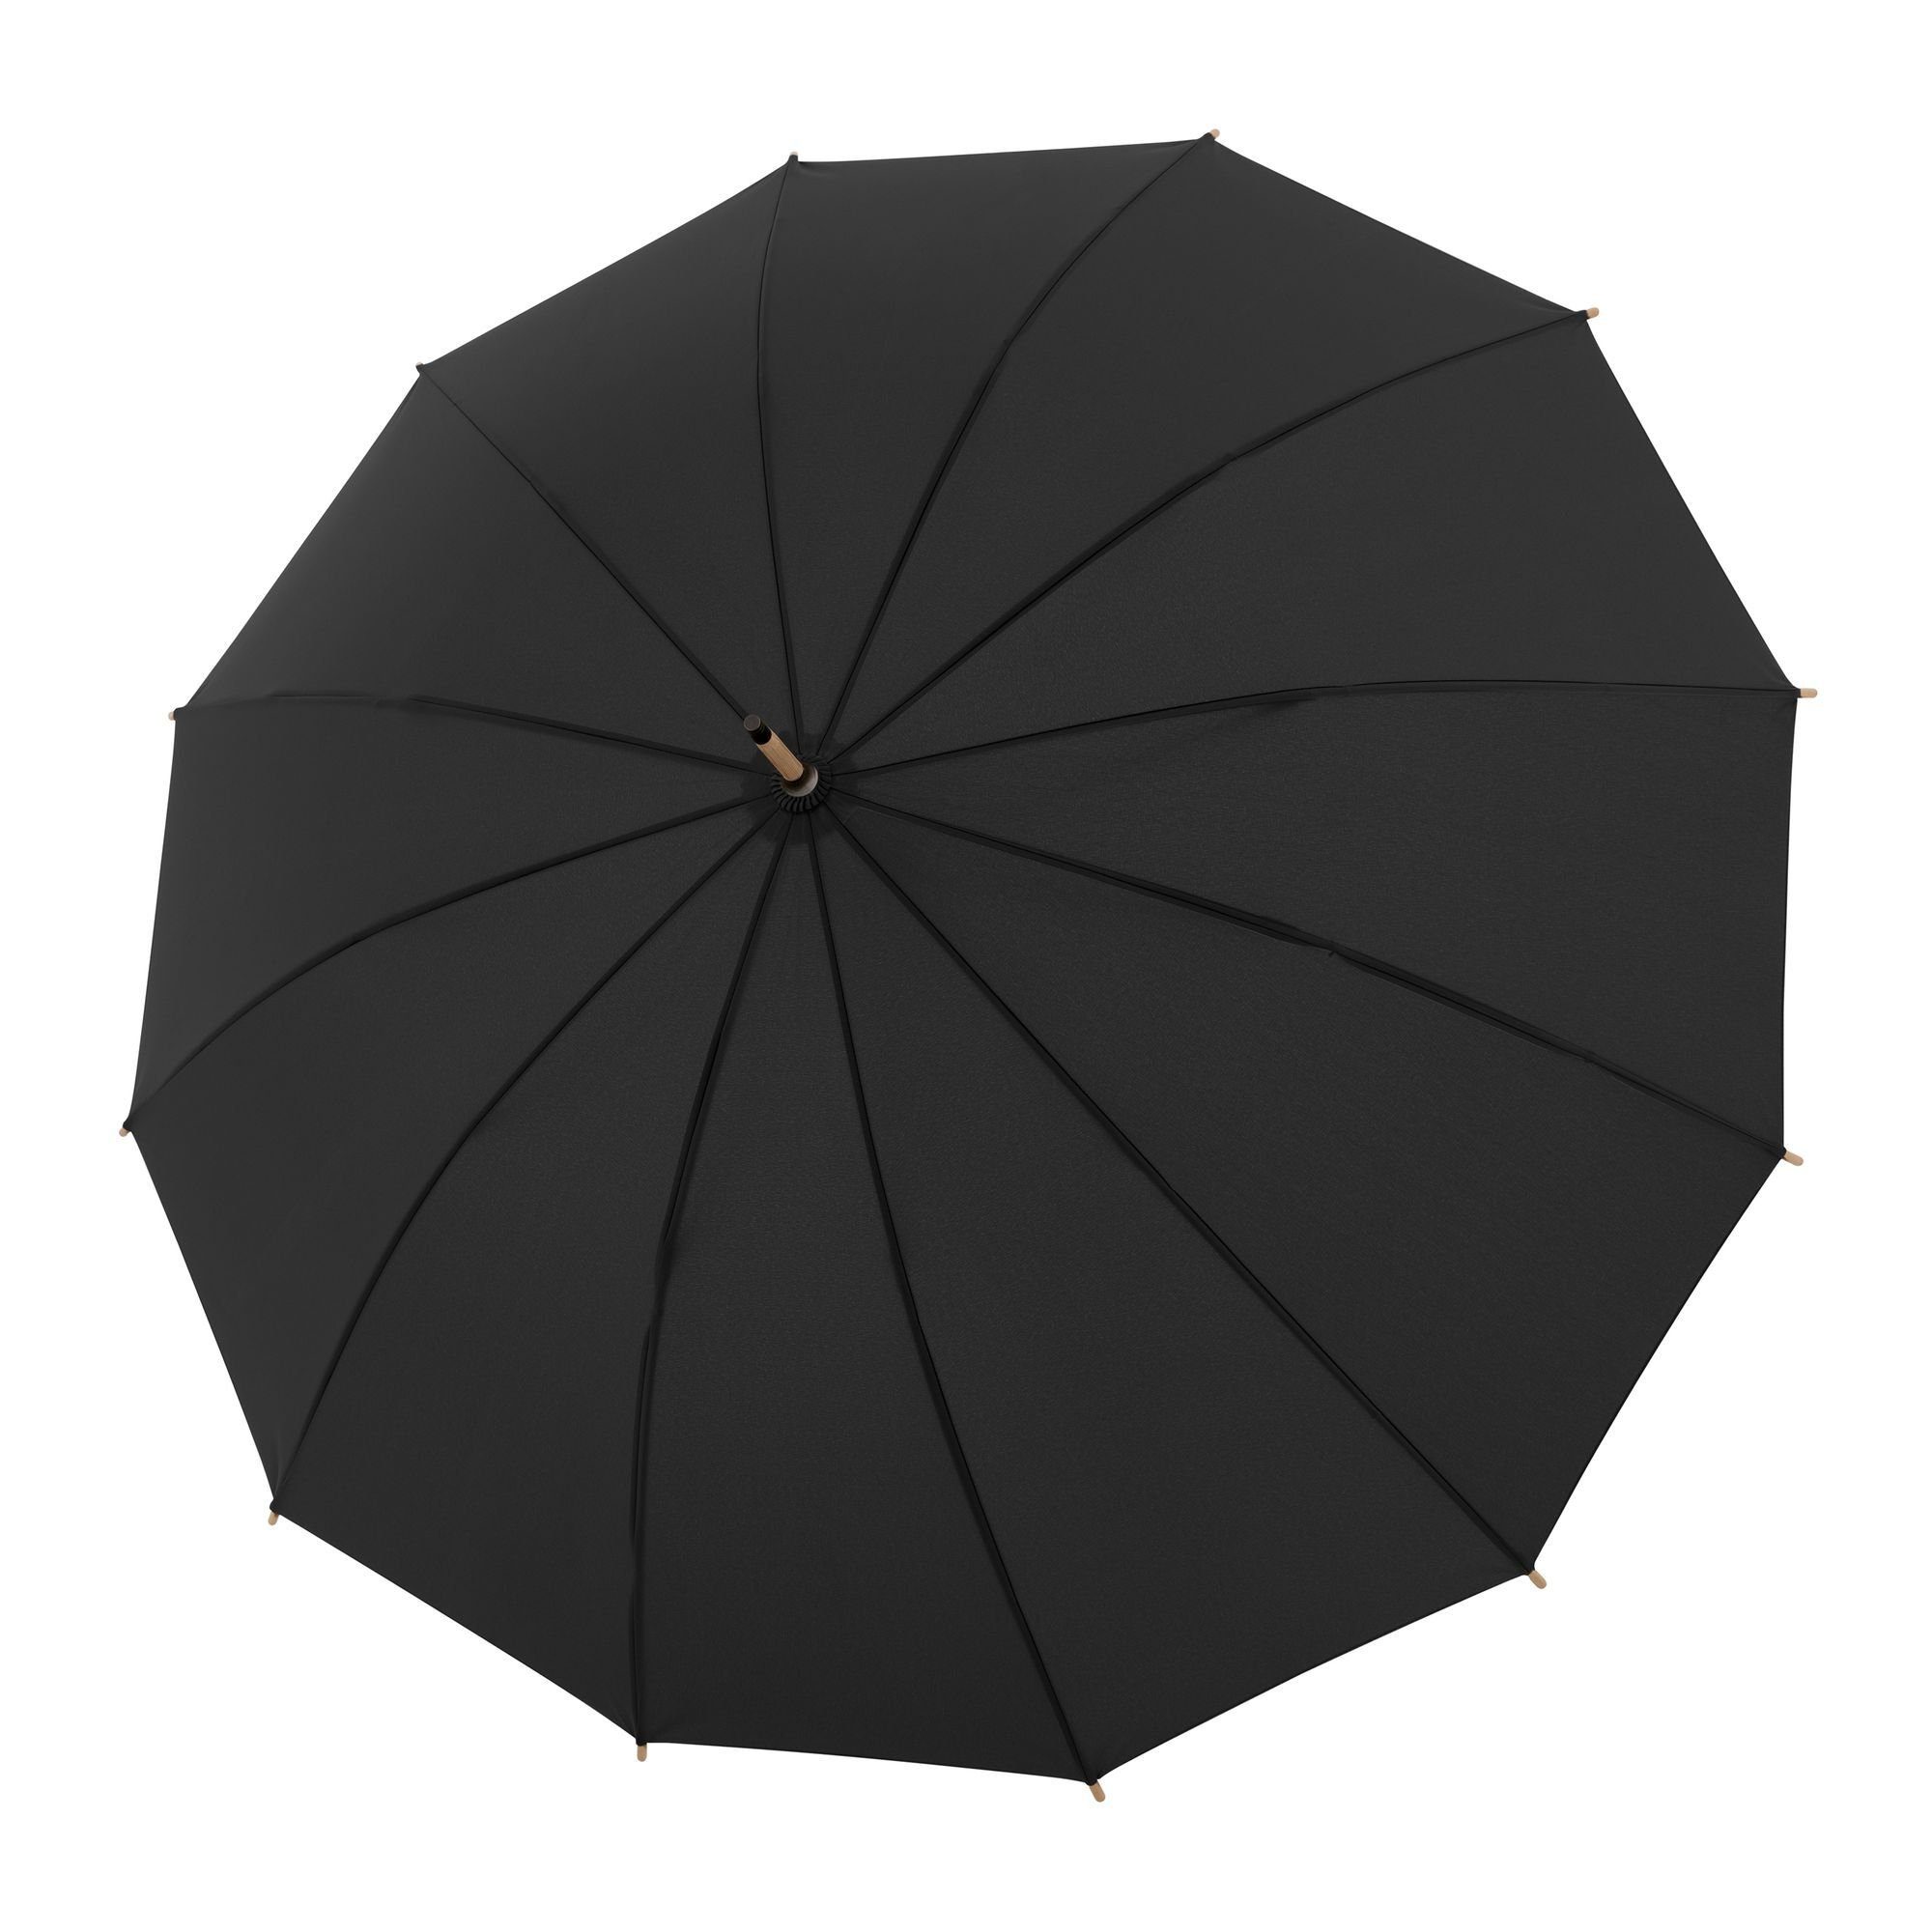 Stockregenschirm black doppler® 111 cm Nature, uni